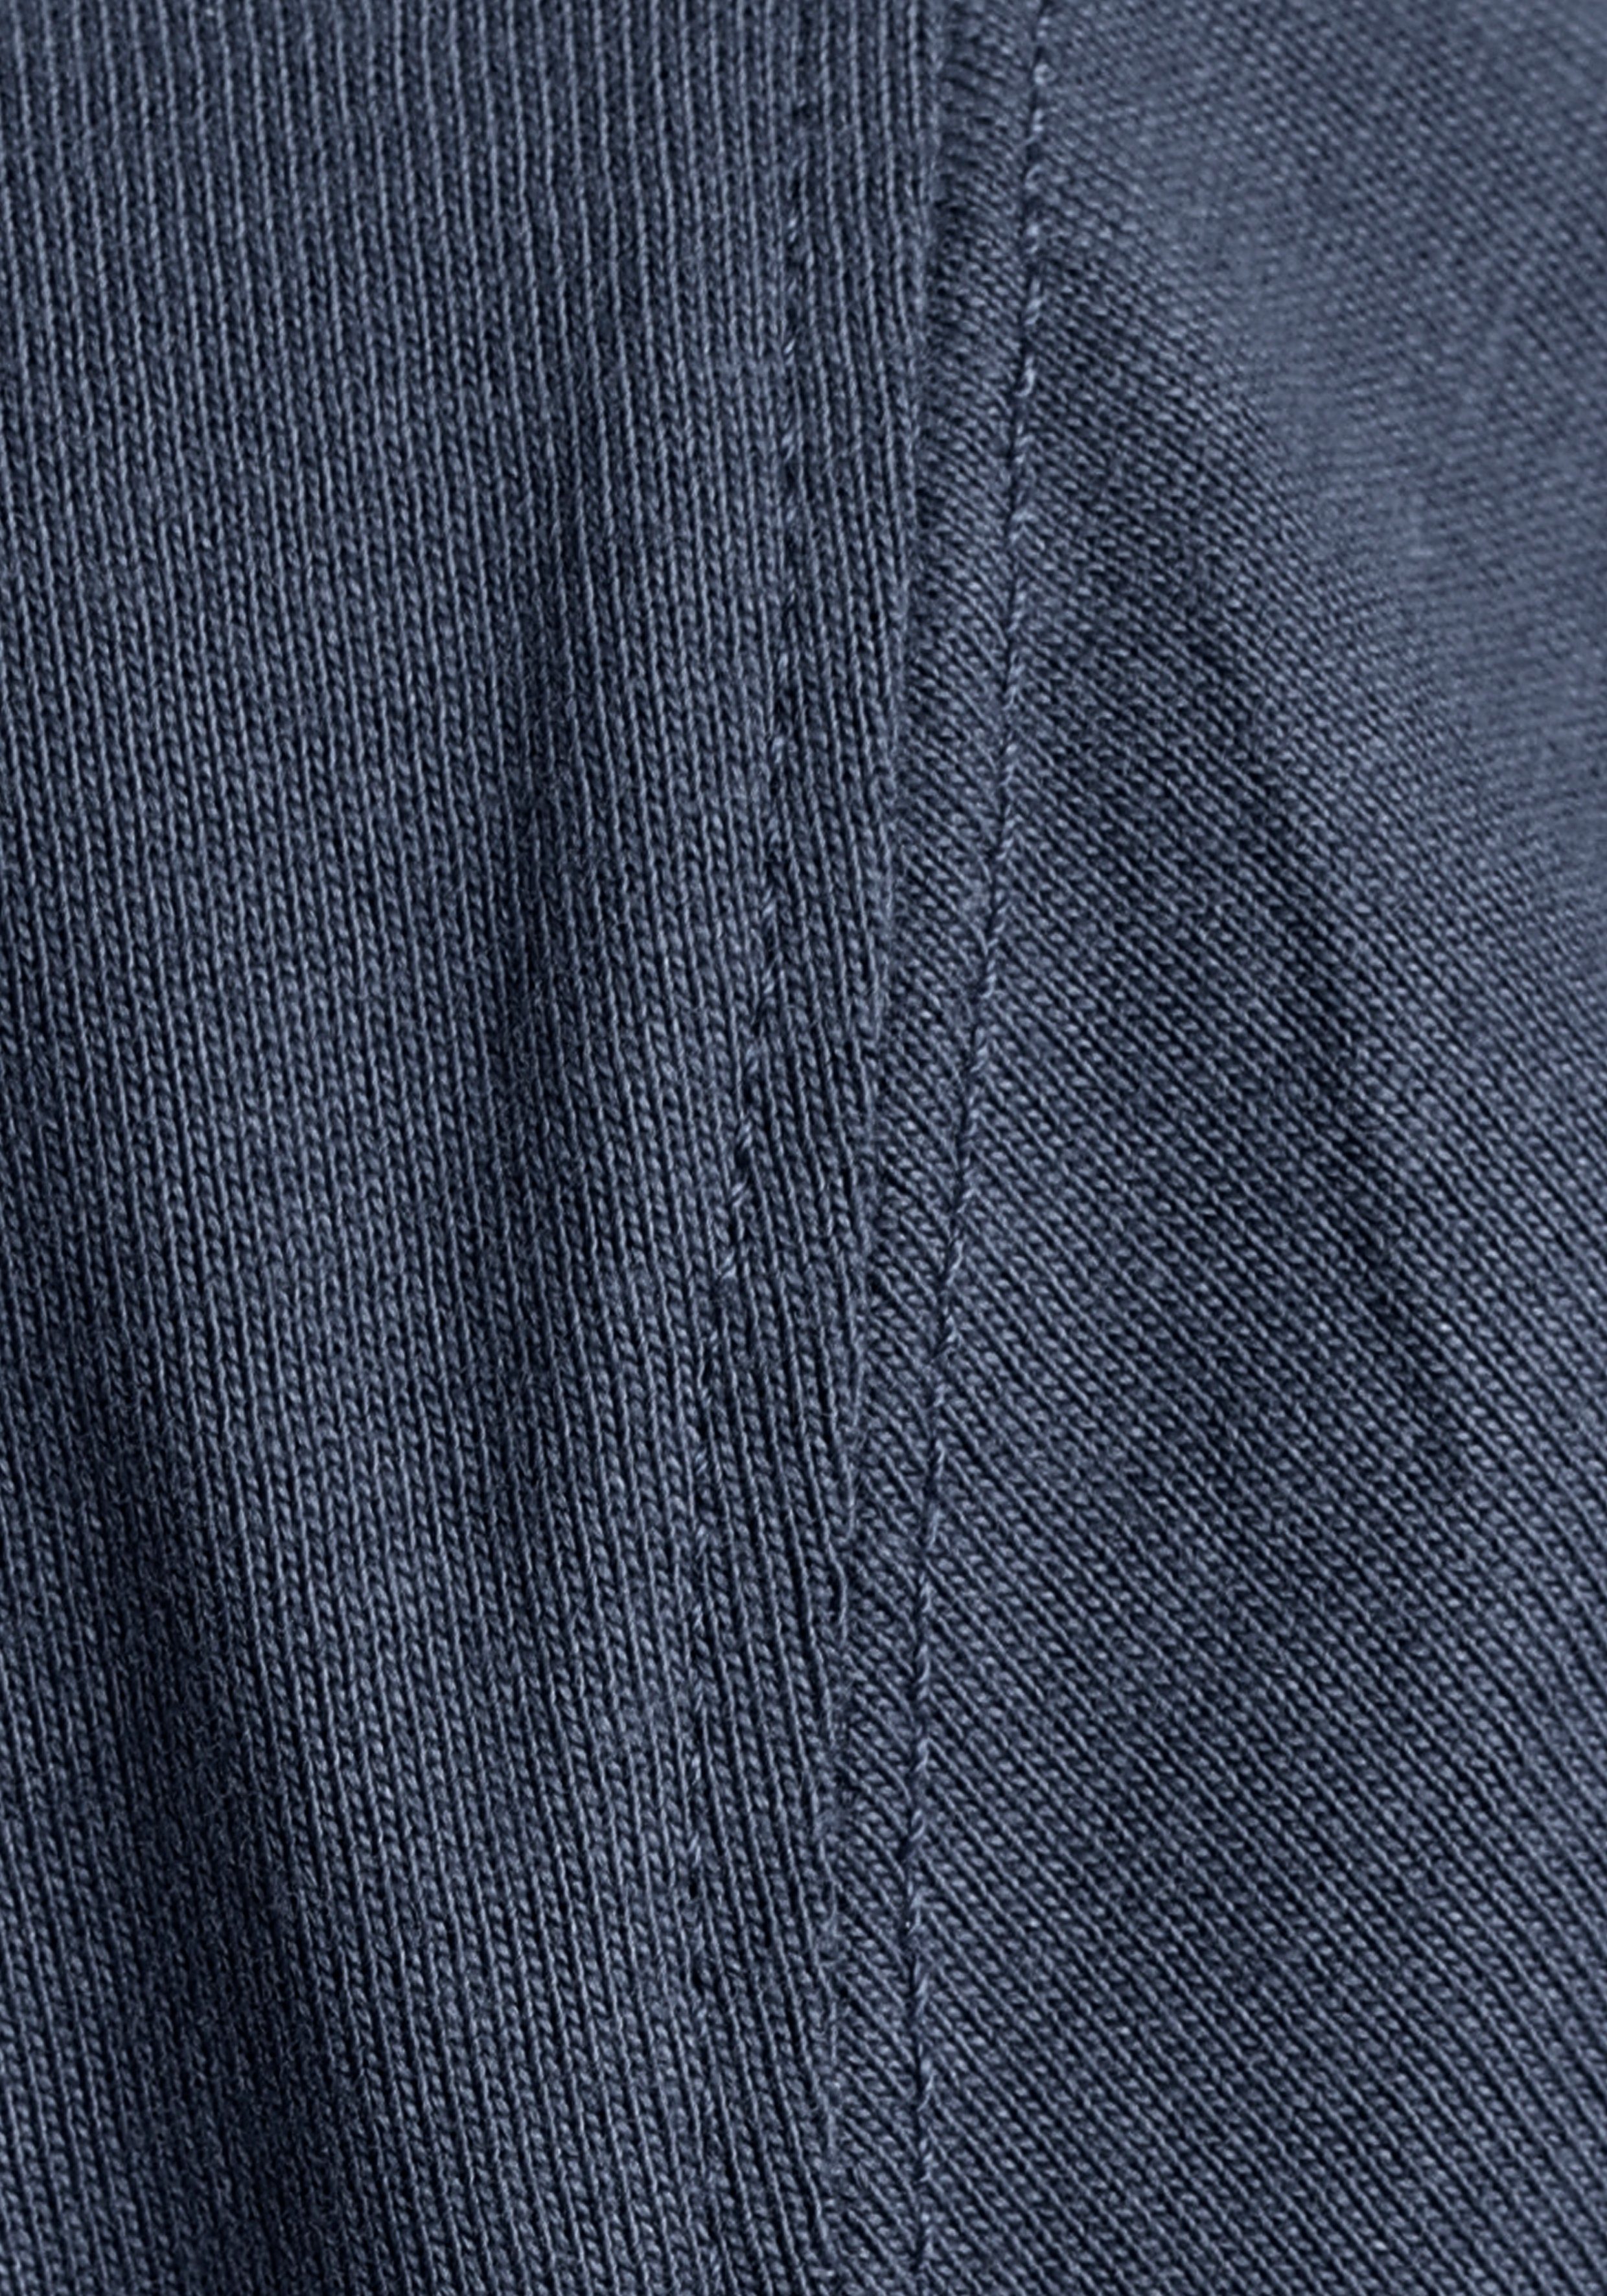 OTTO products T-Shirt »GOTS – aus zertifiziert Bio-Baumwolle« blau